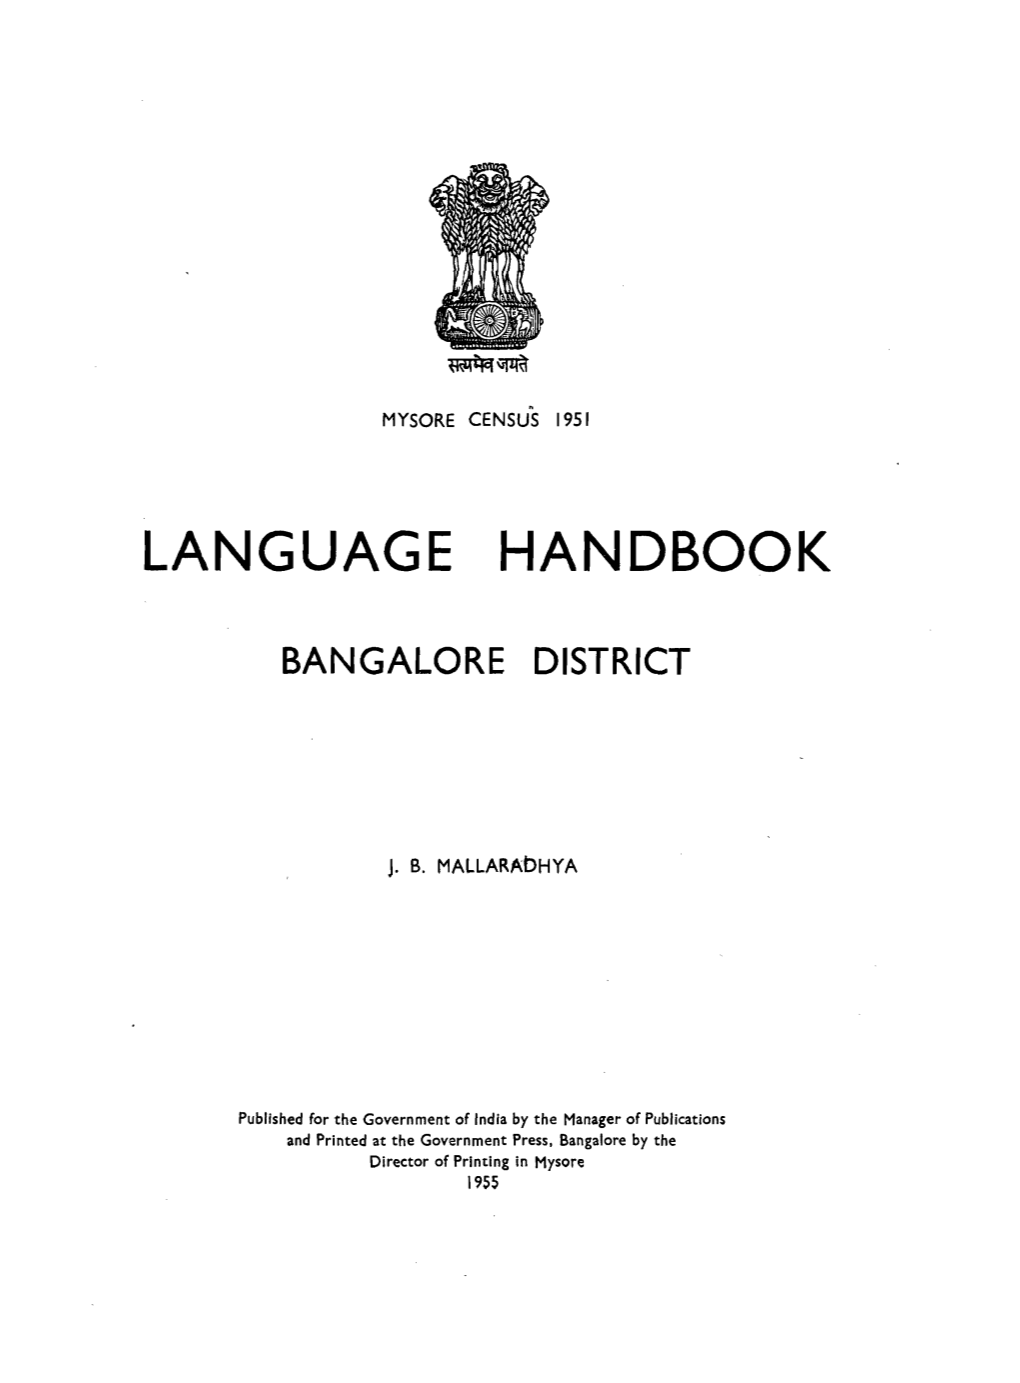 Language Handbook, Bangalore